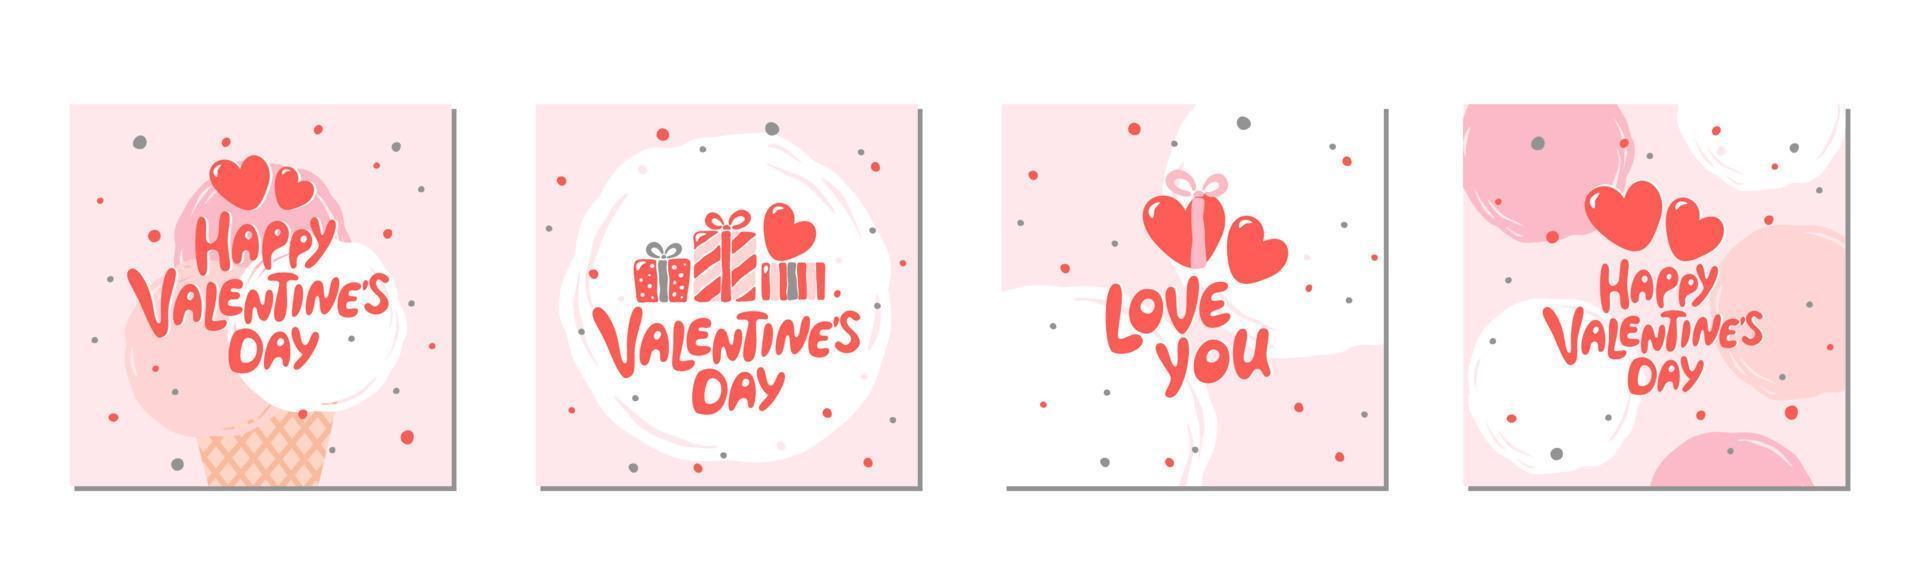 satz von valentinstaggrußkarten mit handgeschriebener grußbeschriftung. geeignet für social-media-posts, banner-design. Vektor-Illustration. vektor